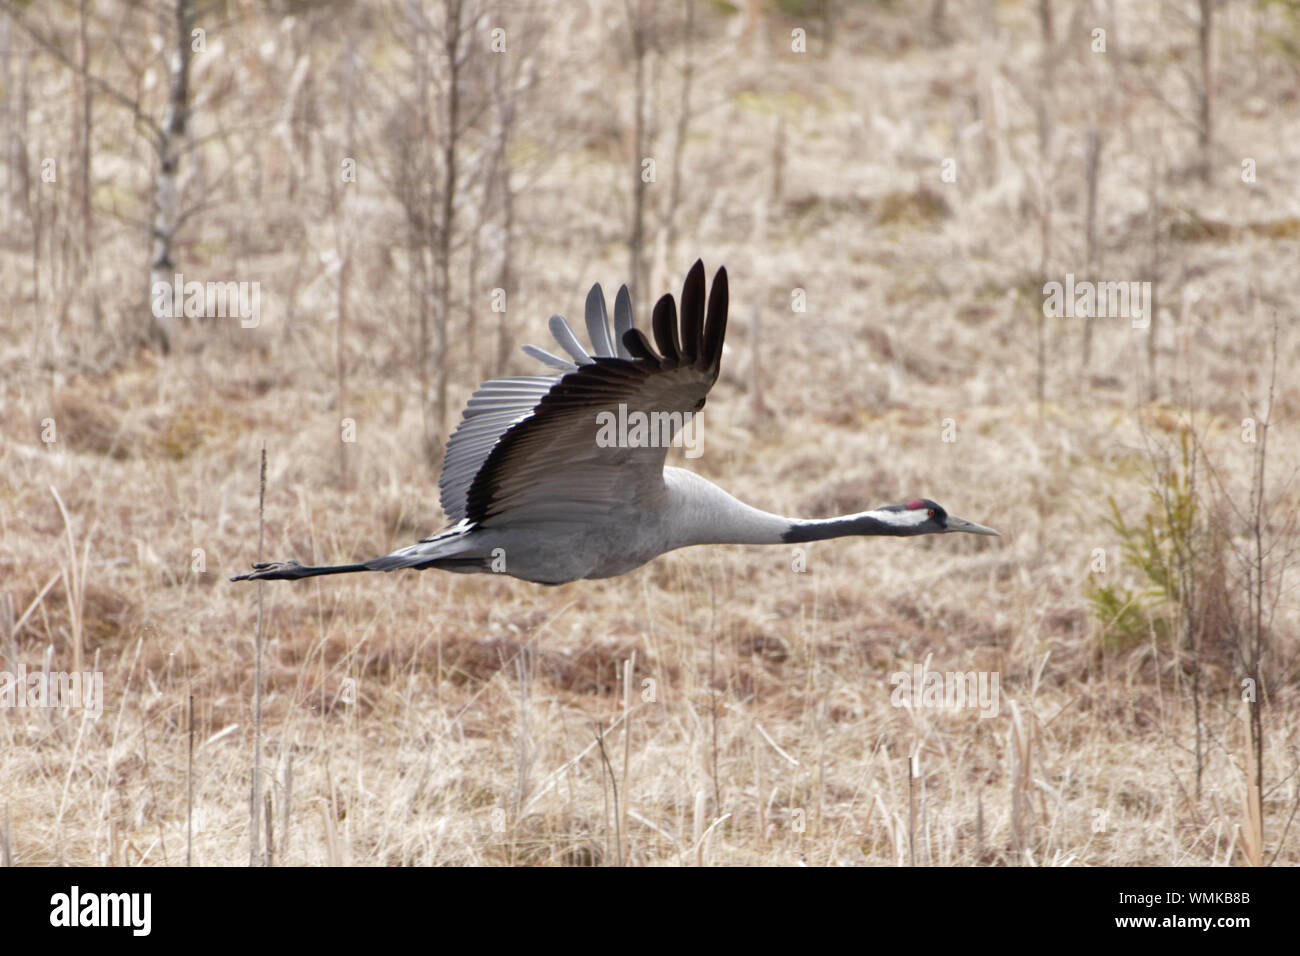 Eurasian Crane Flying Over Field Stock Photo